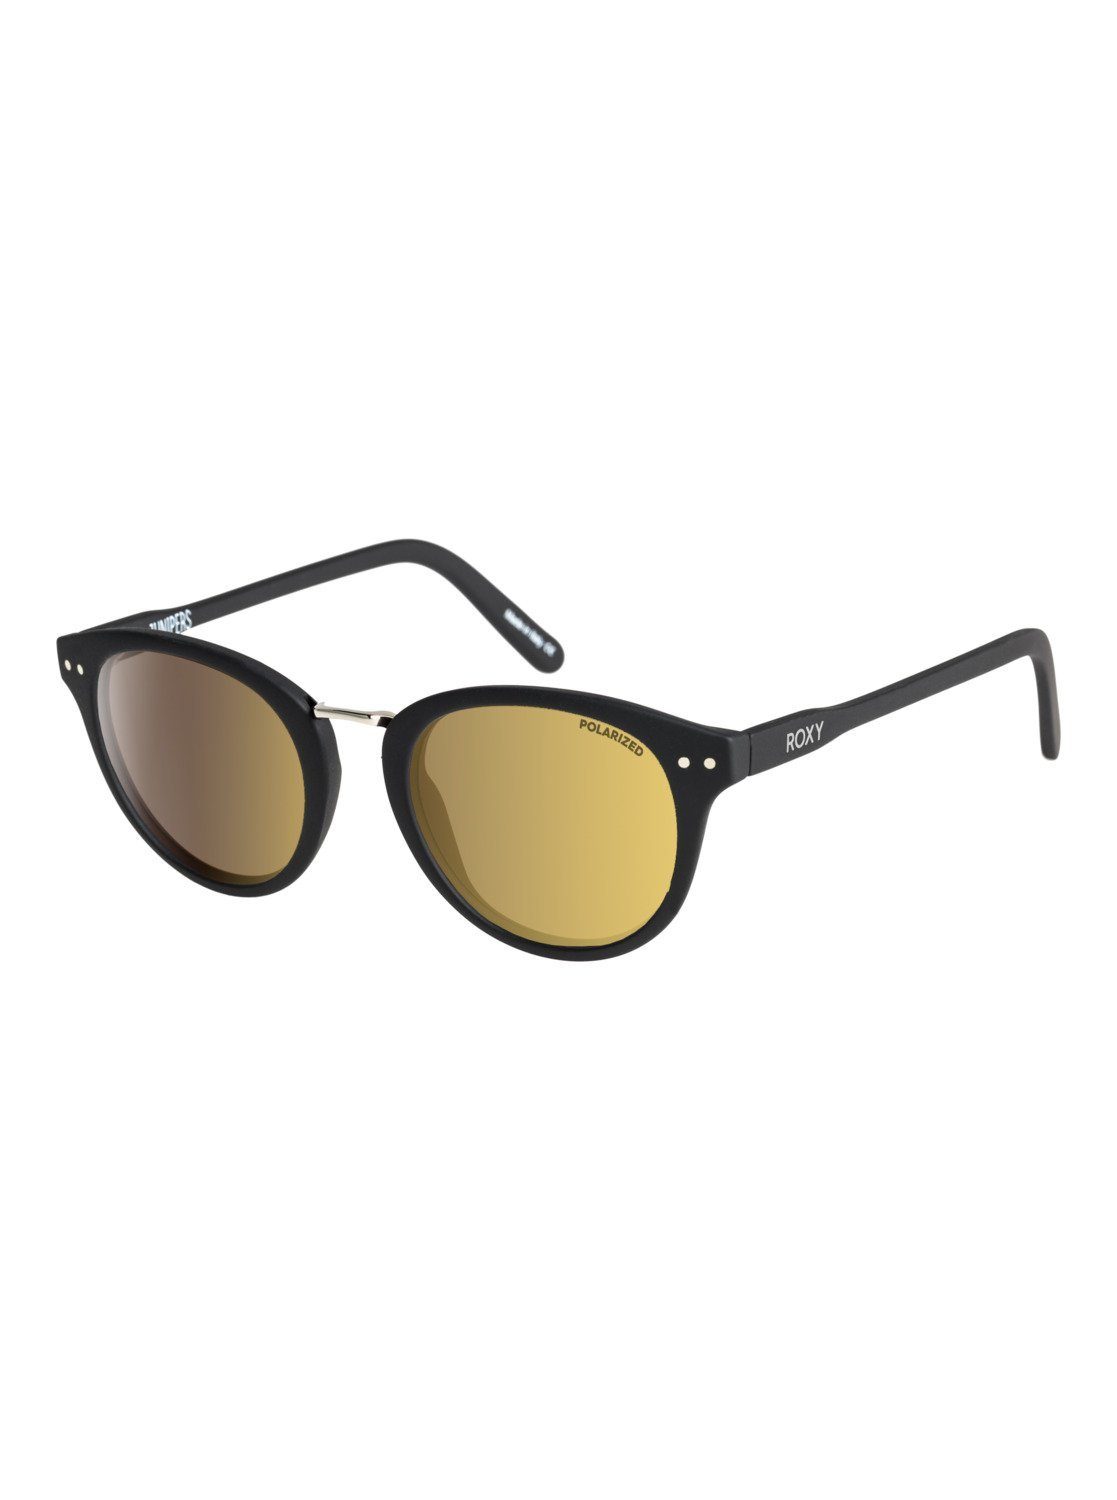 Roxy Sonnenbrille Junipers Polarized | Sonnenbrillen